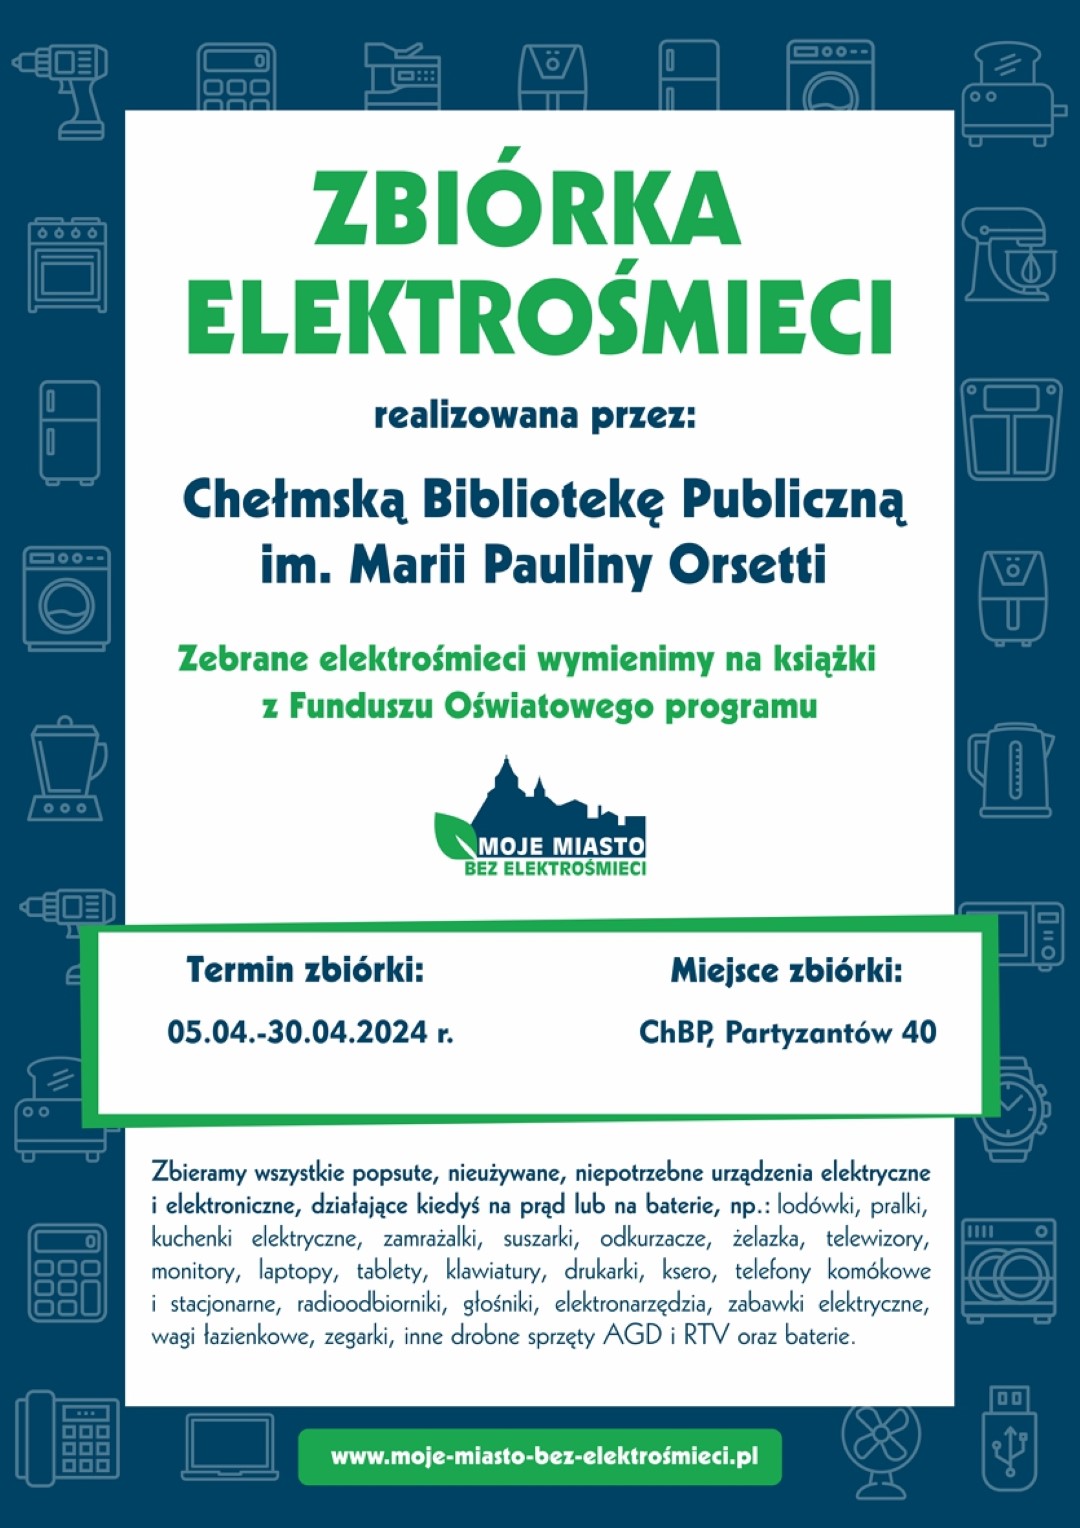 Plakat informujący o zbiórce elektrośmieci realizowanej przez Chełmską Bibliotekę Publiczną. Plakat w kolorach niebiesko zielonych